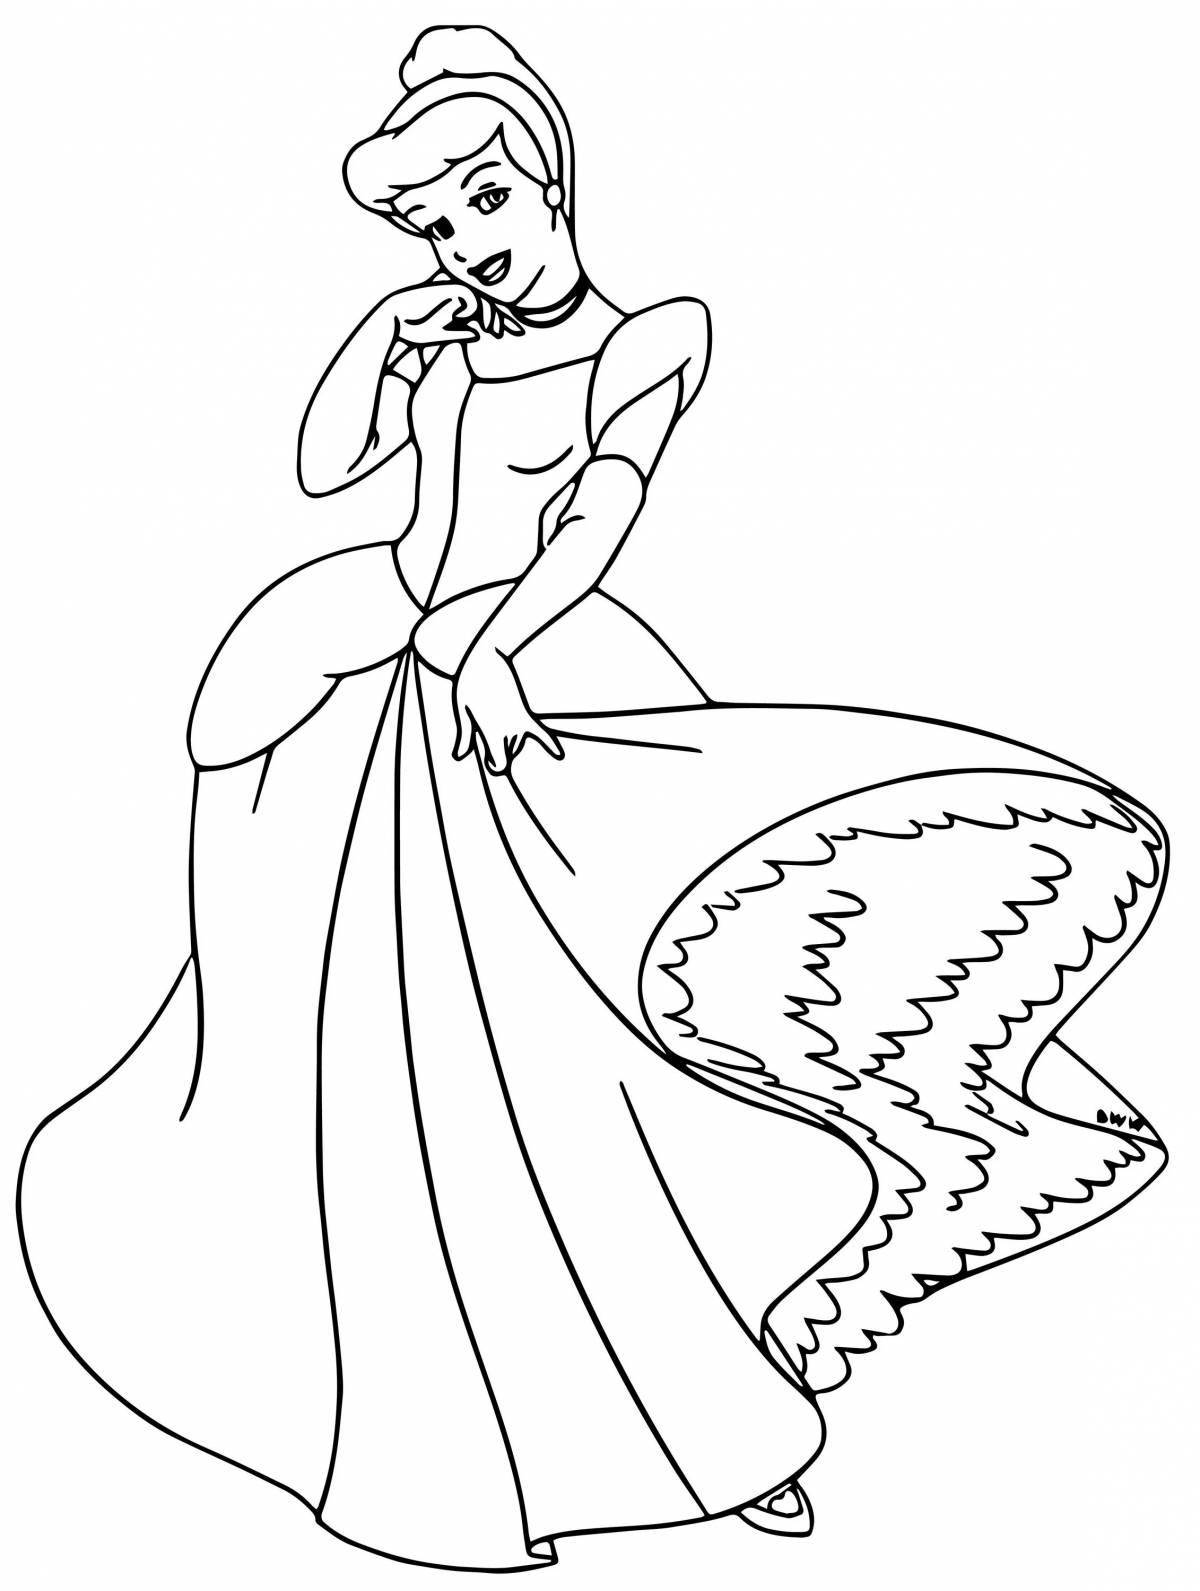 Cinderella shining coloring page